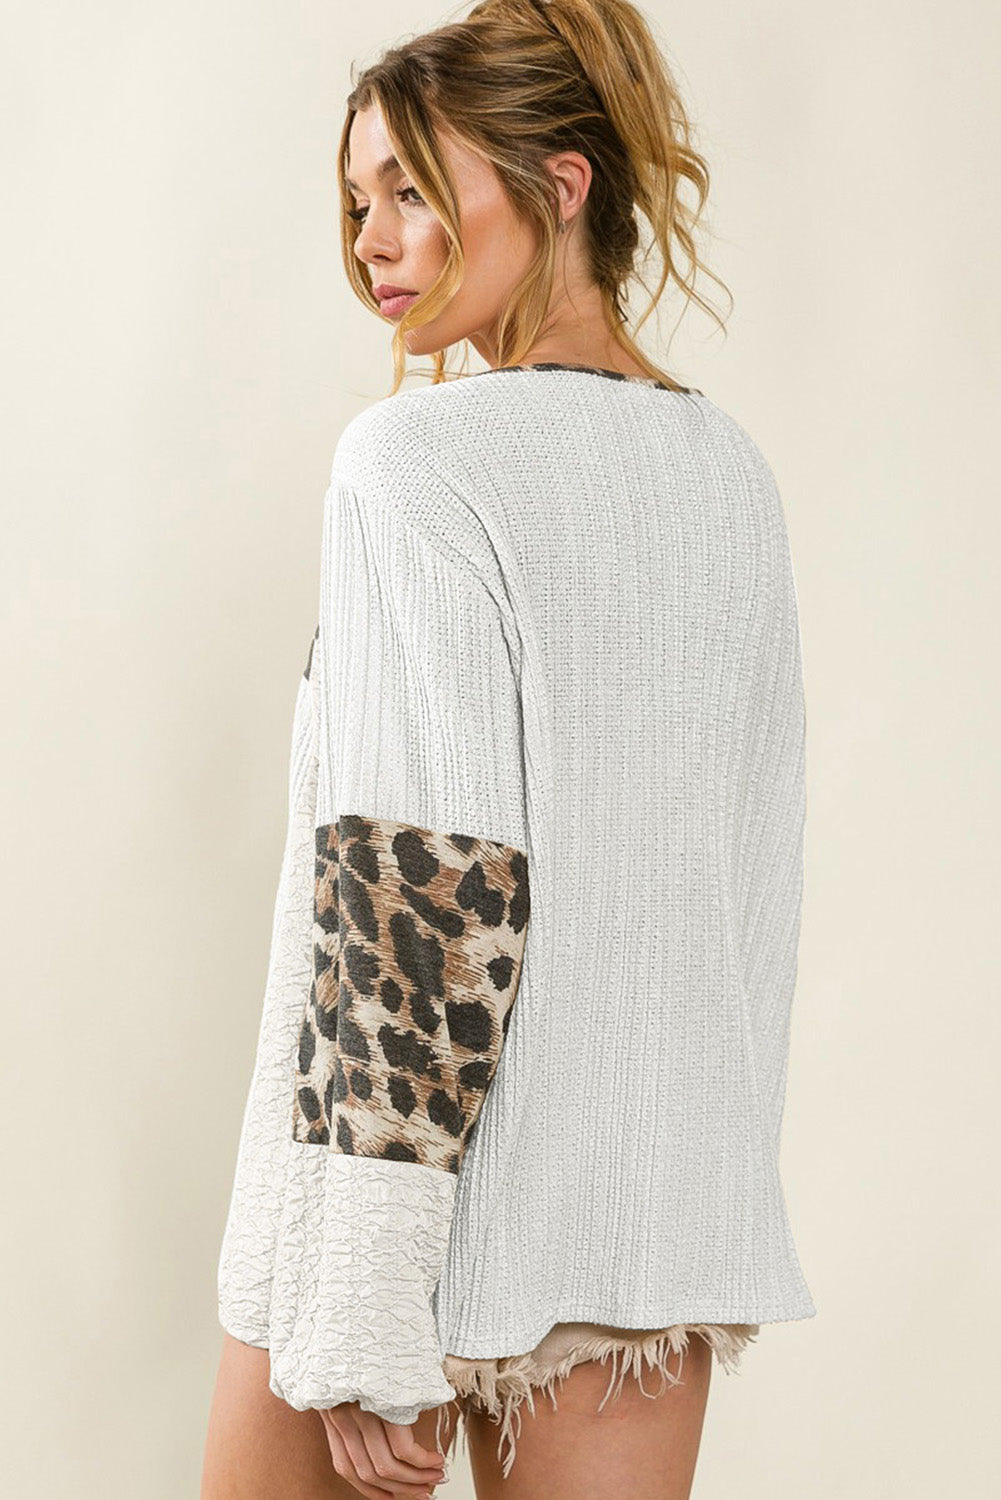 Bela teksturirana bluza z napihnjenimi rokavi v obliki leoparda